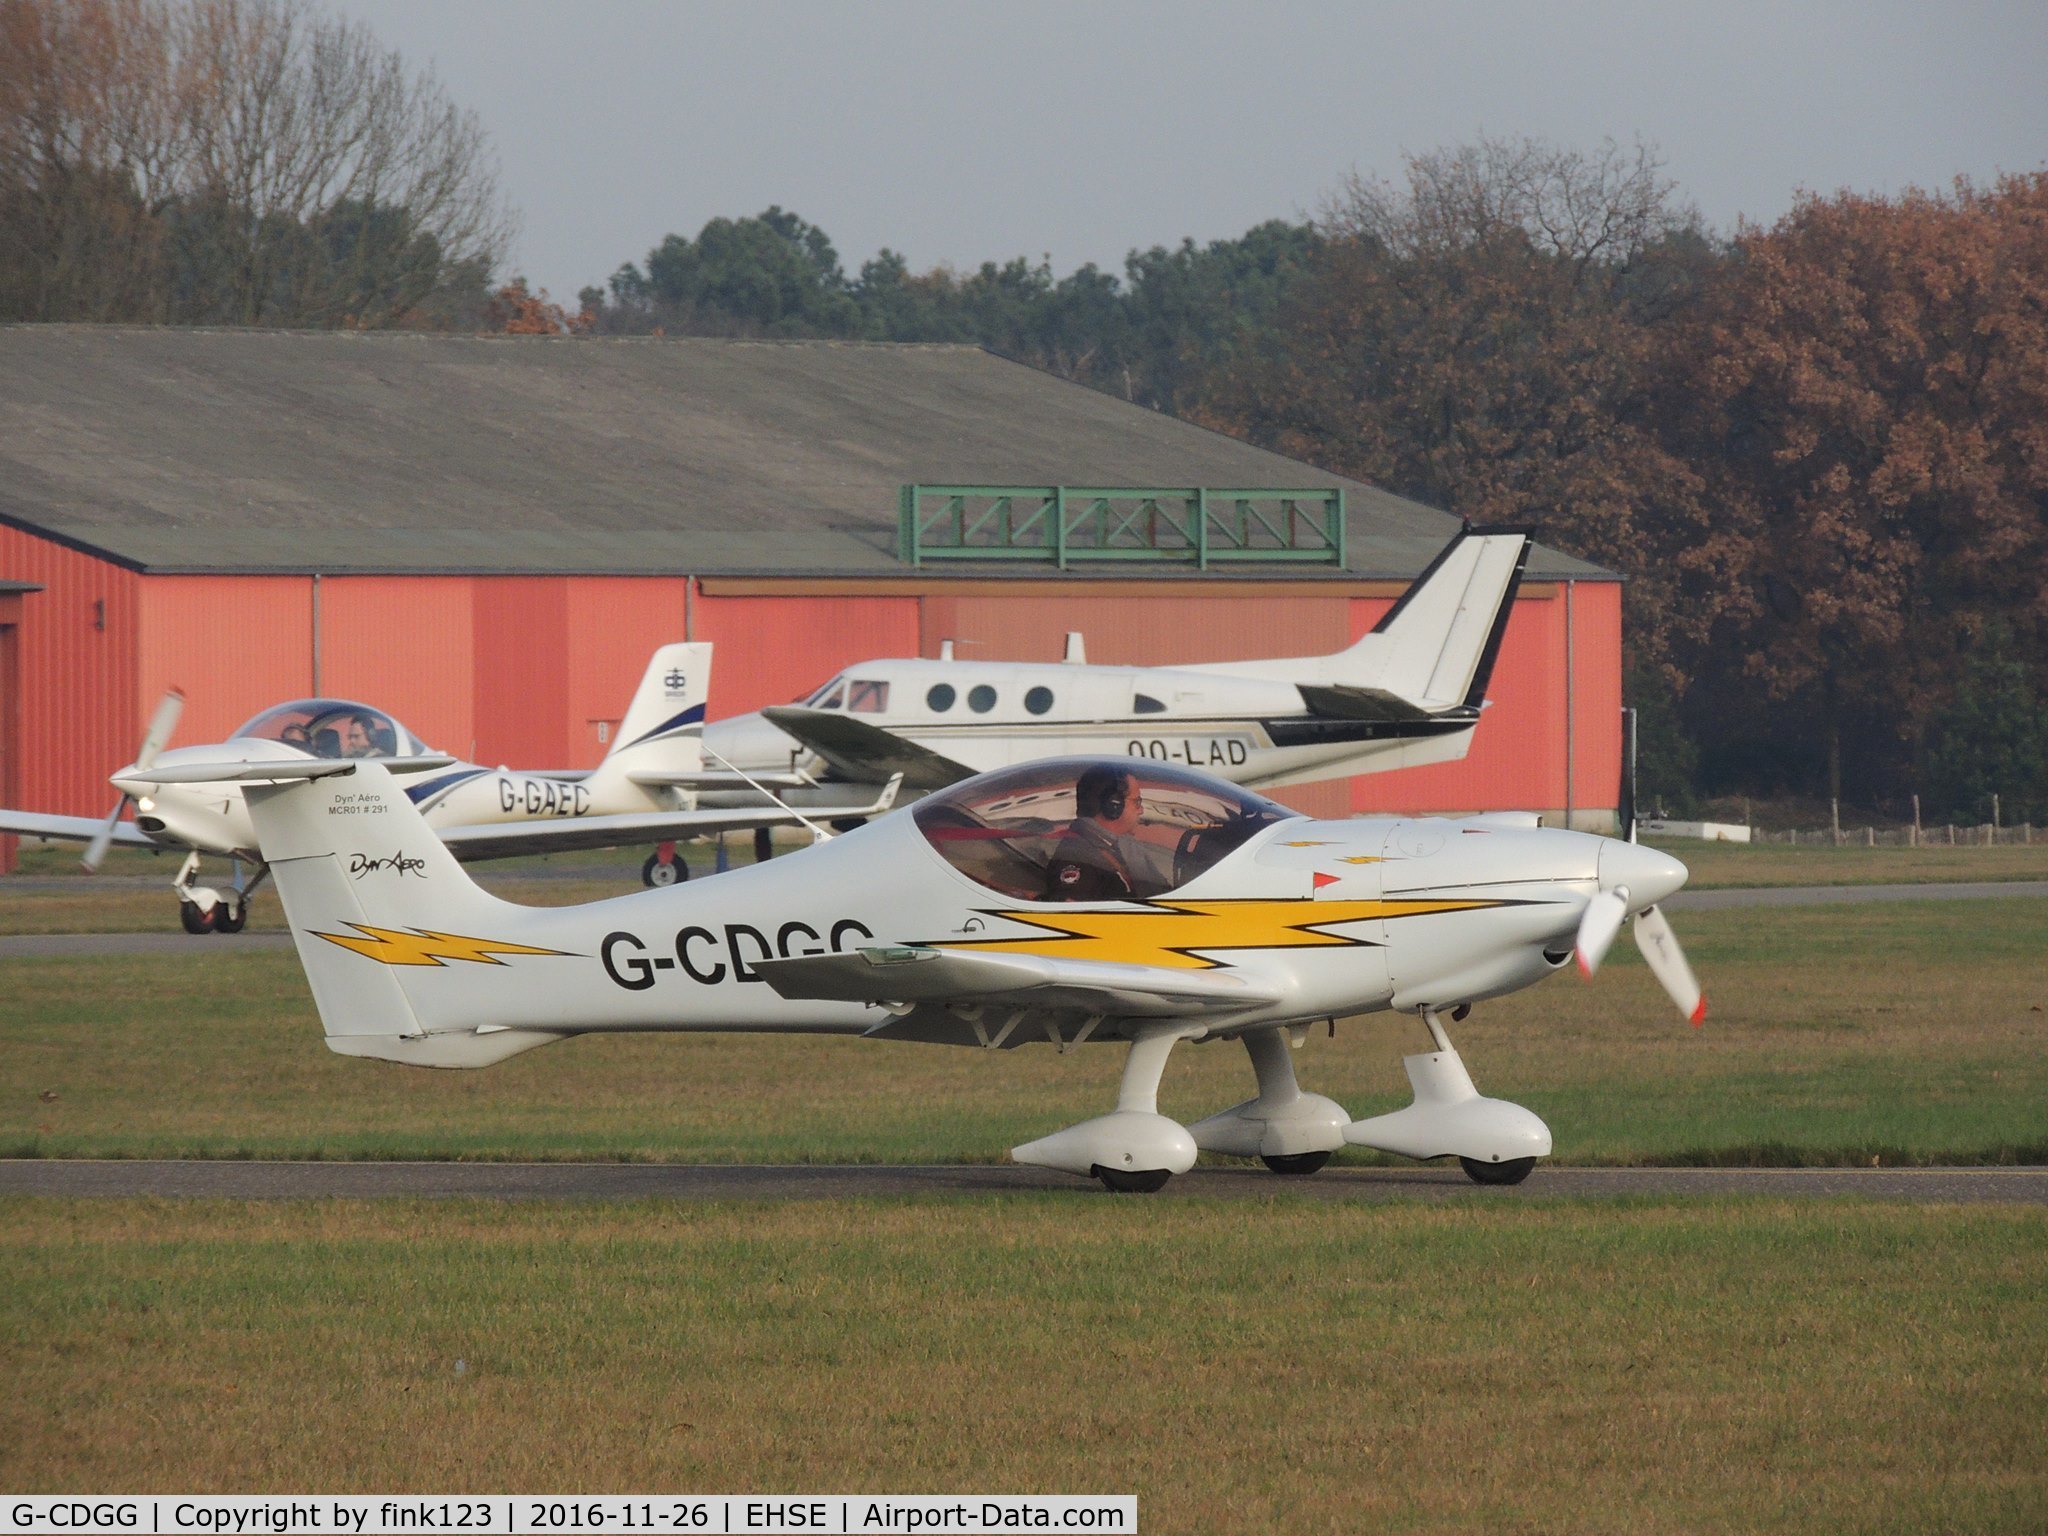 G-CDGG, 2004 Dyn'Aero MCR-01 Club C/N PFA 301A-14267, i love the flames